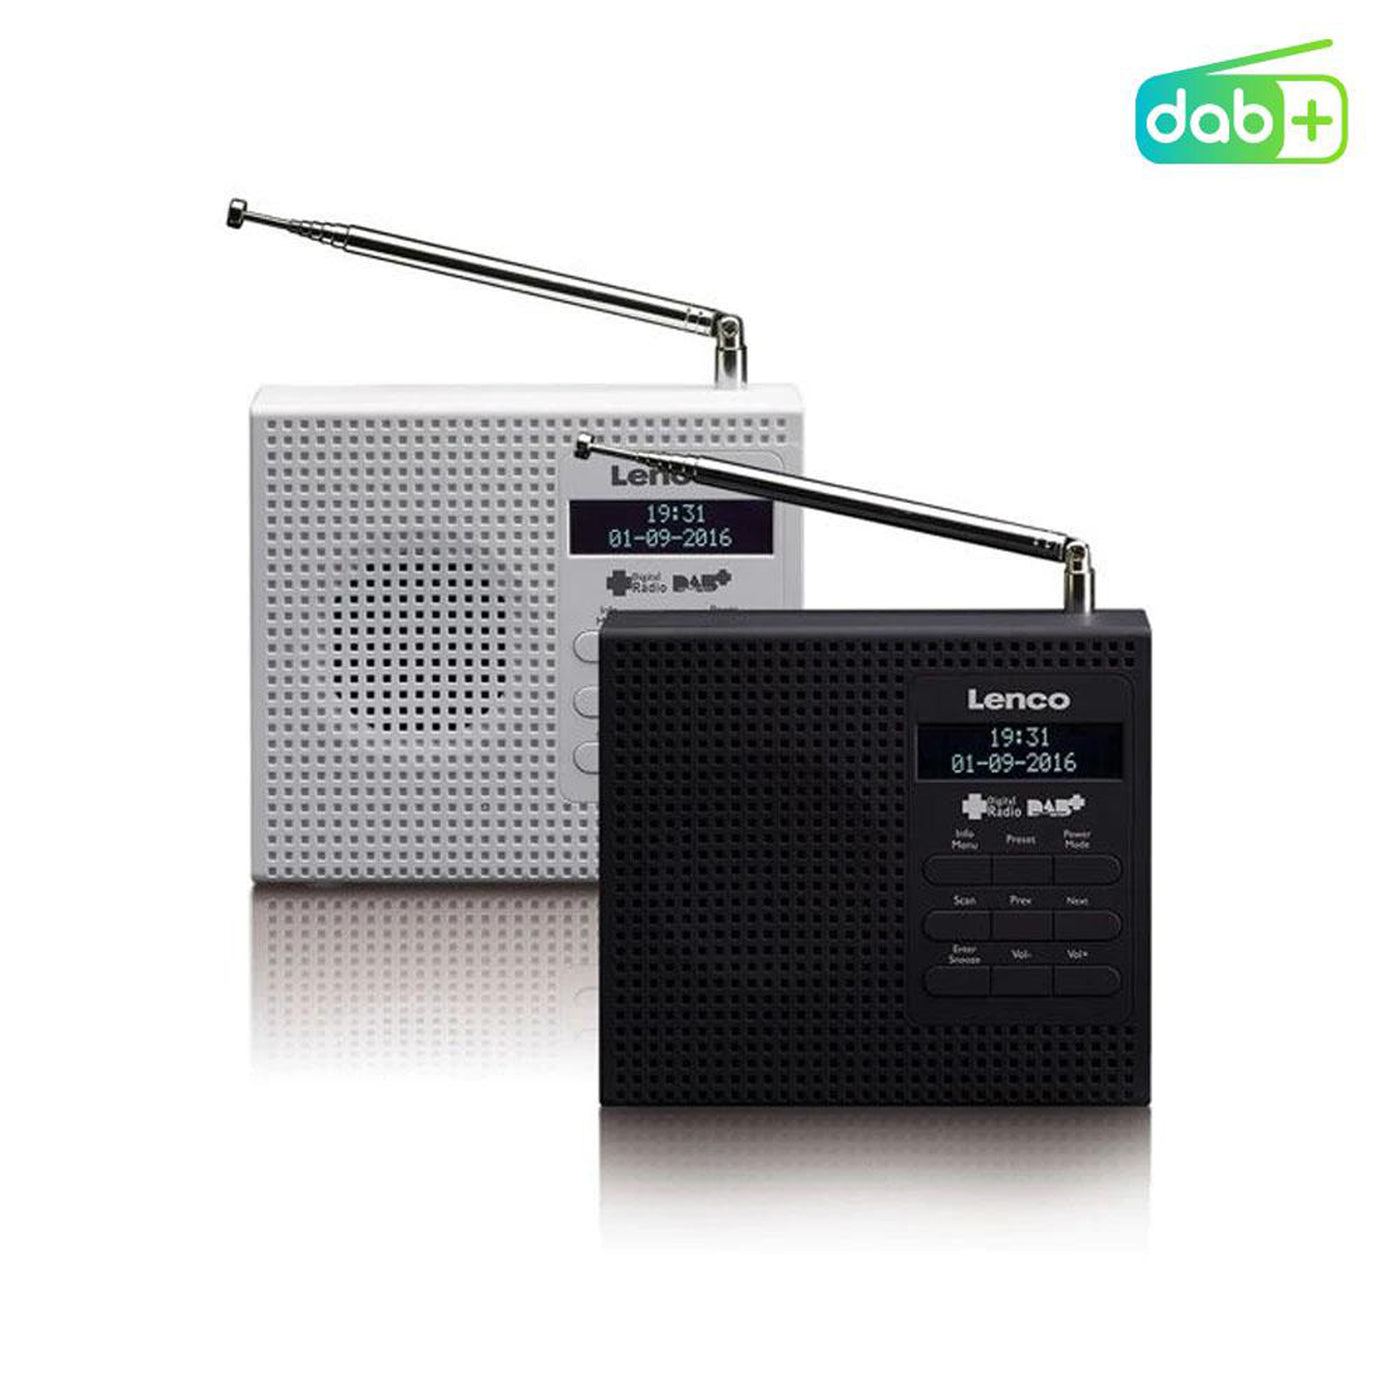 Lenco PDR-020WH - Radio DAB+/FM portable avec fonction réveil - Blanc